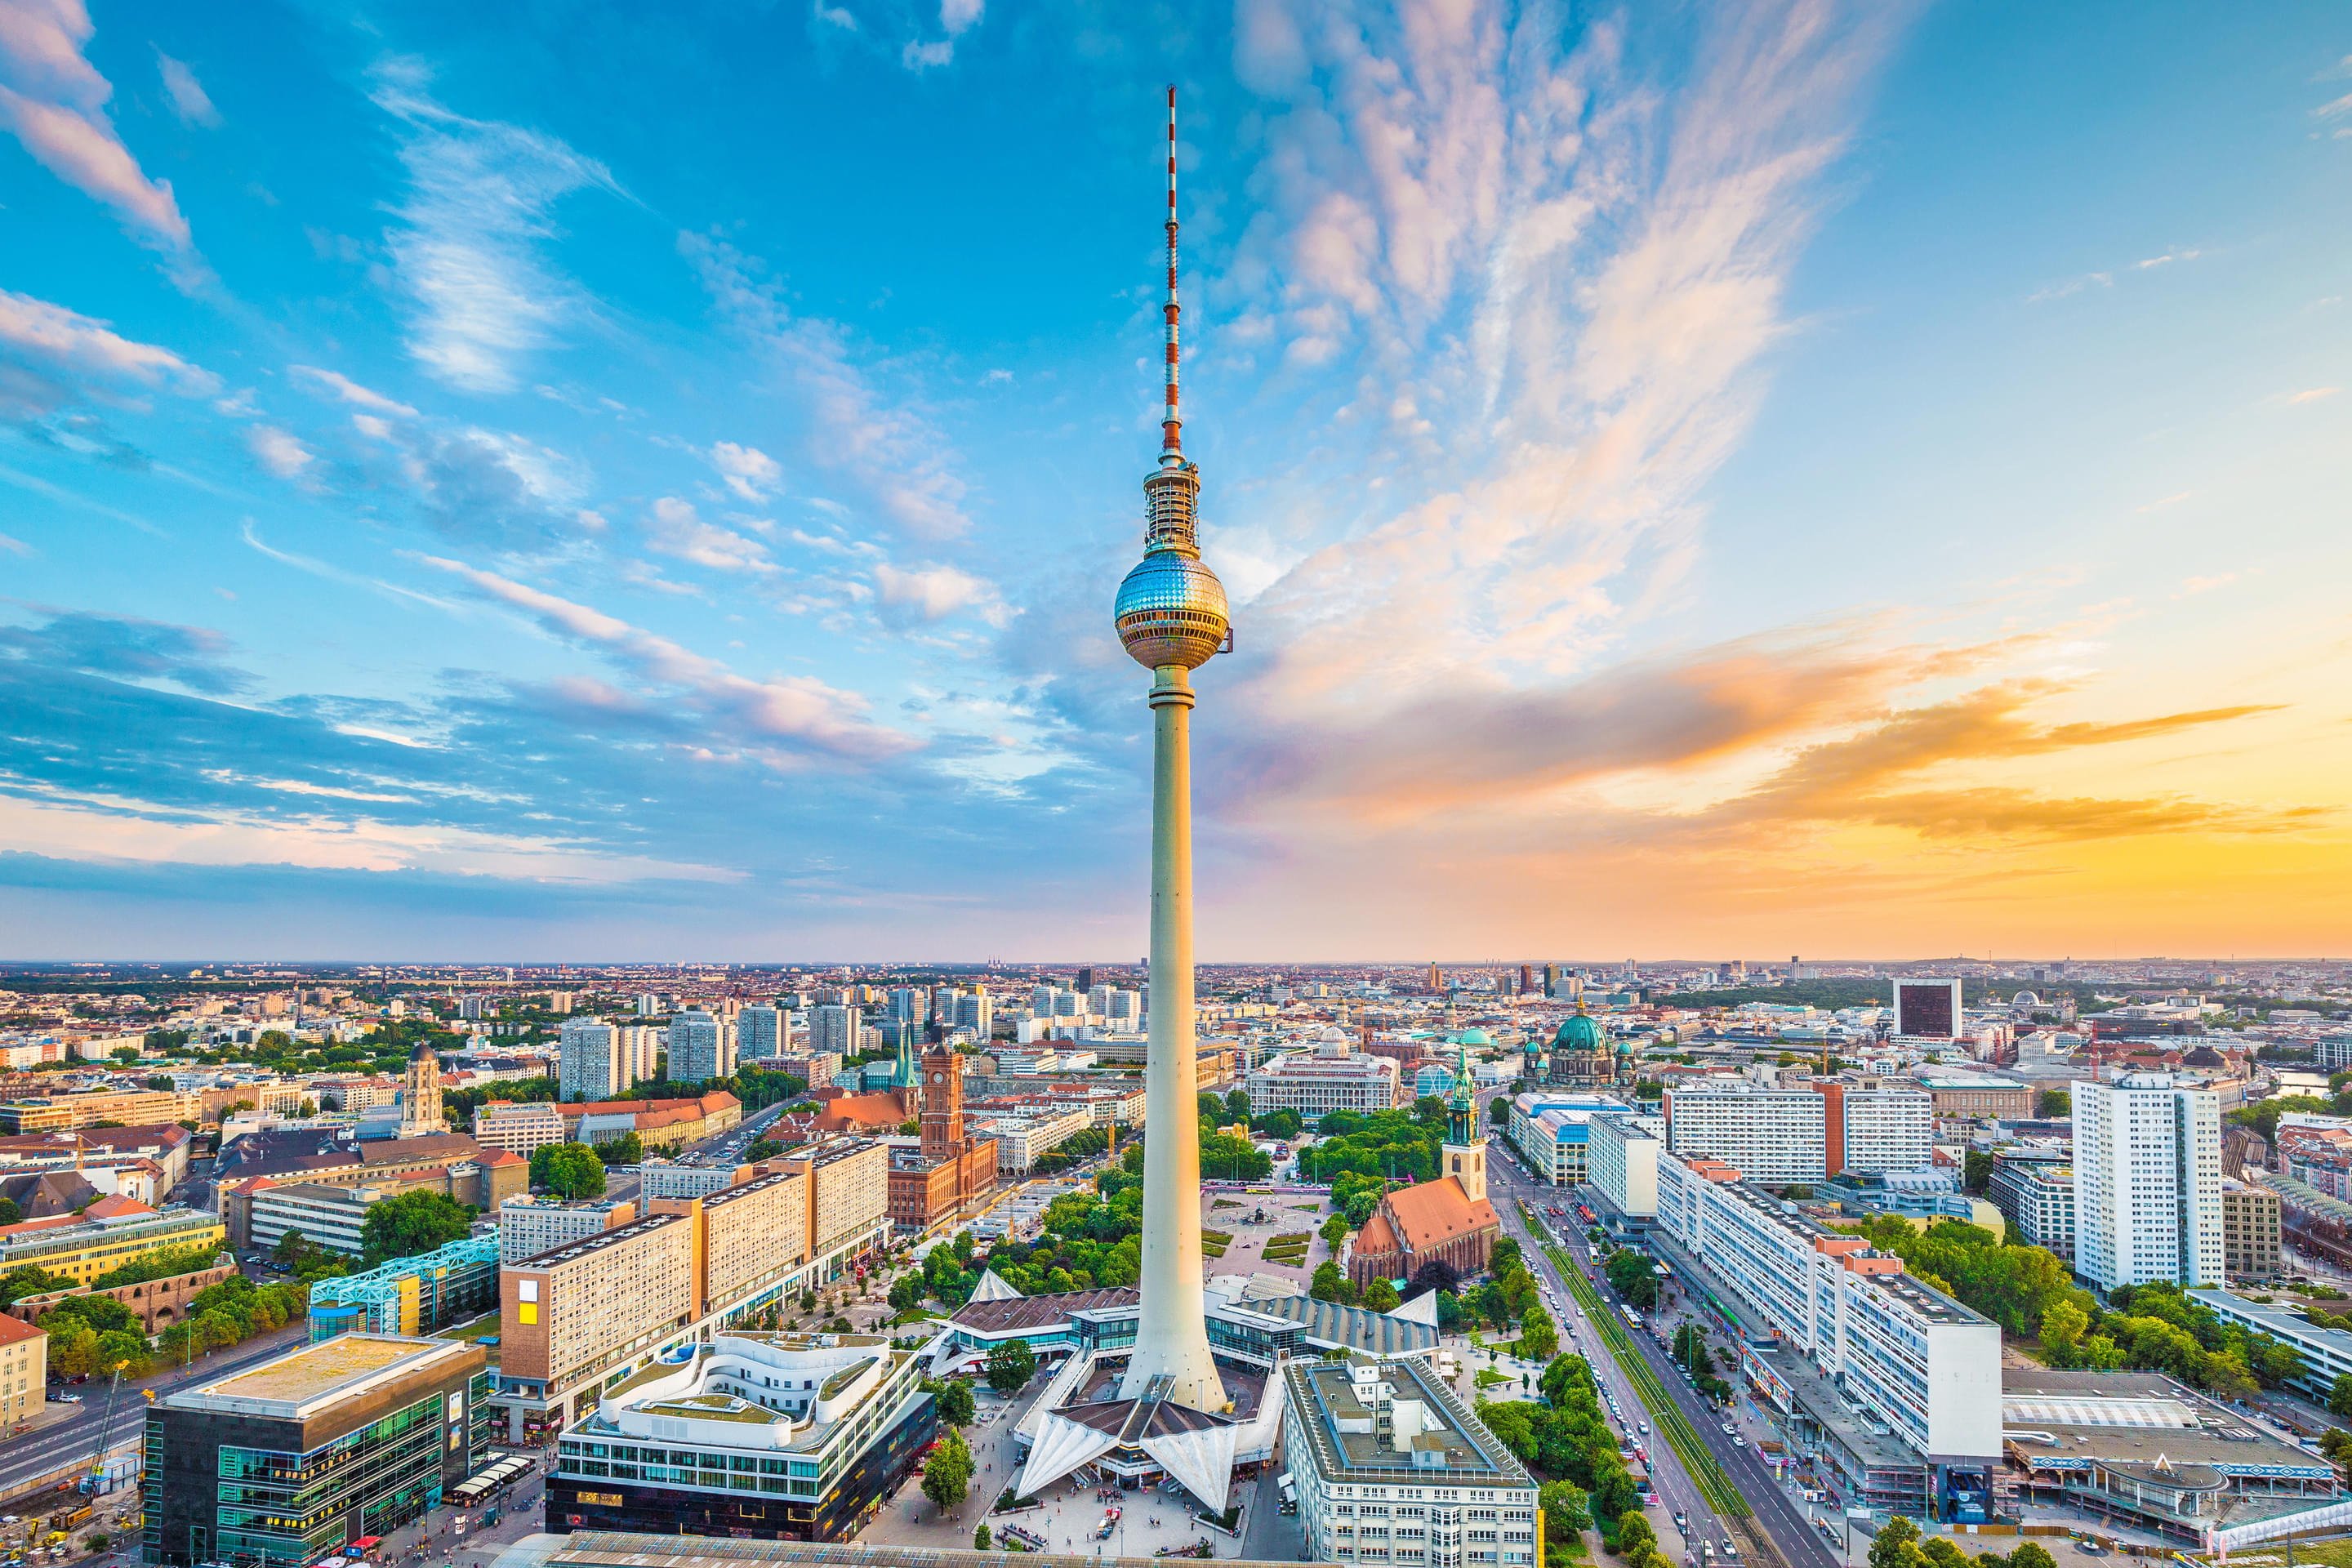 Berliner Fernsehturm Overview